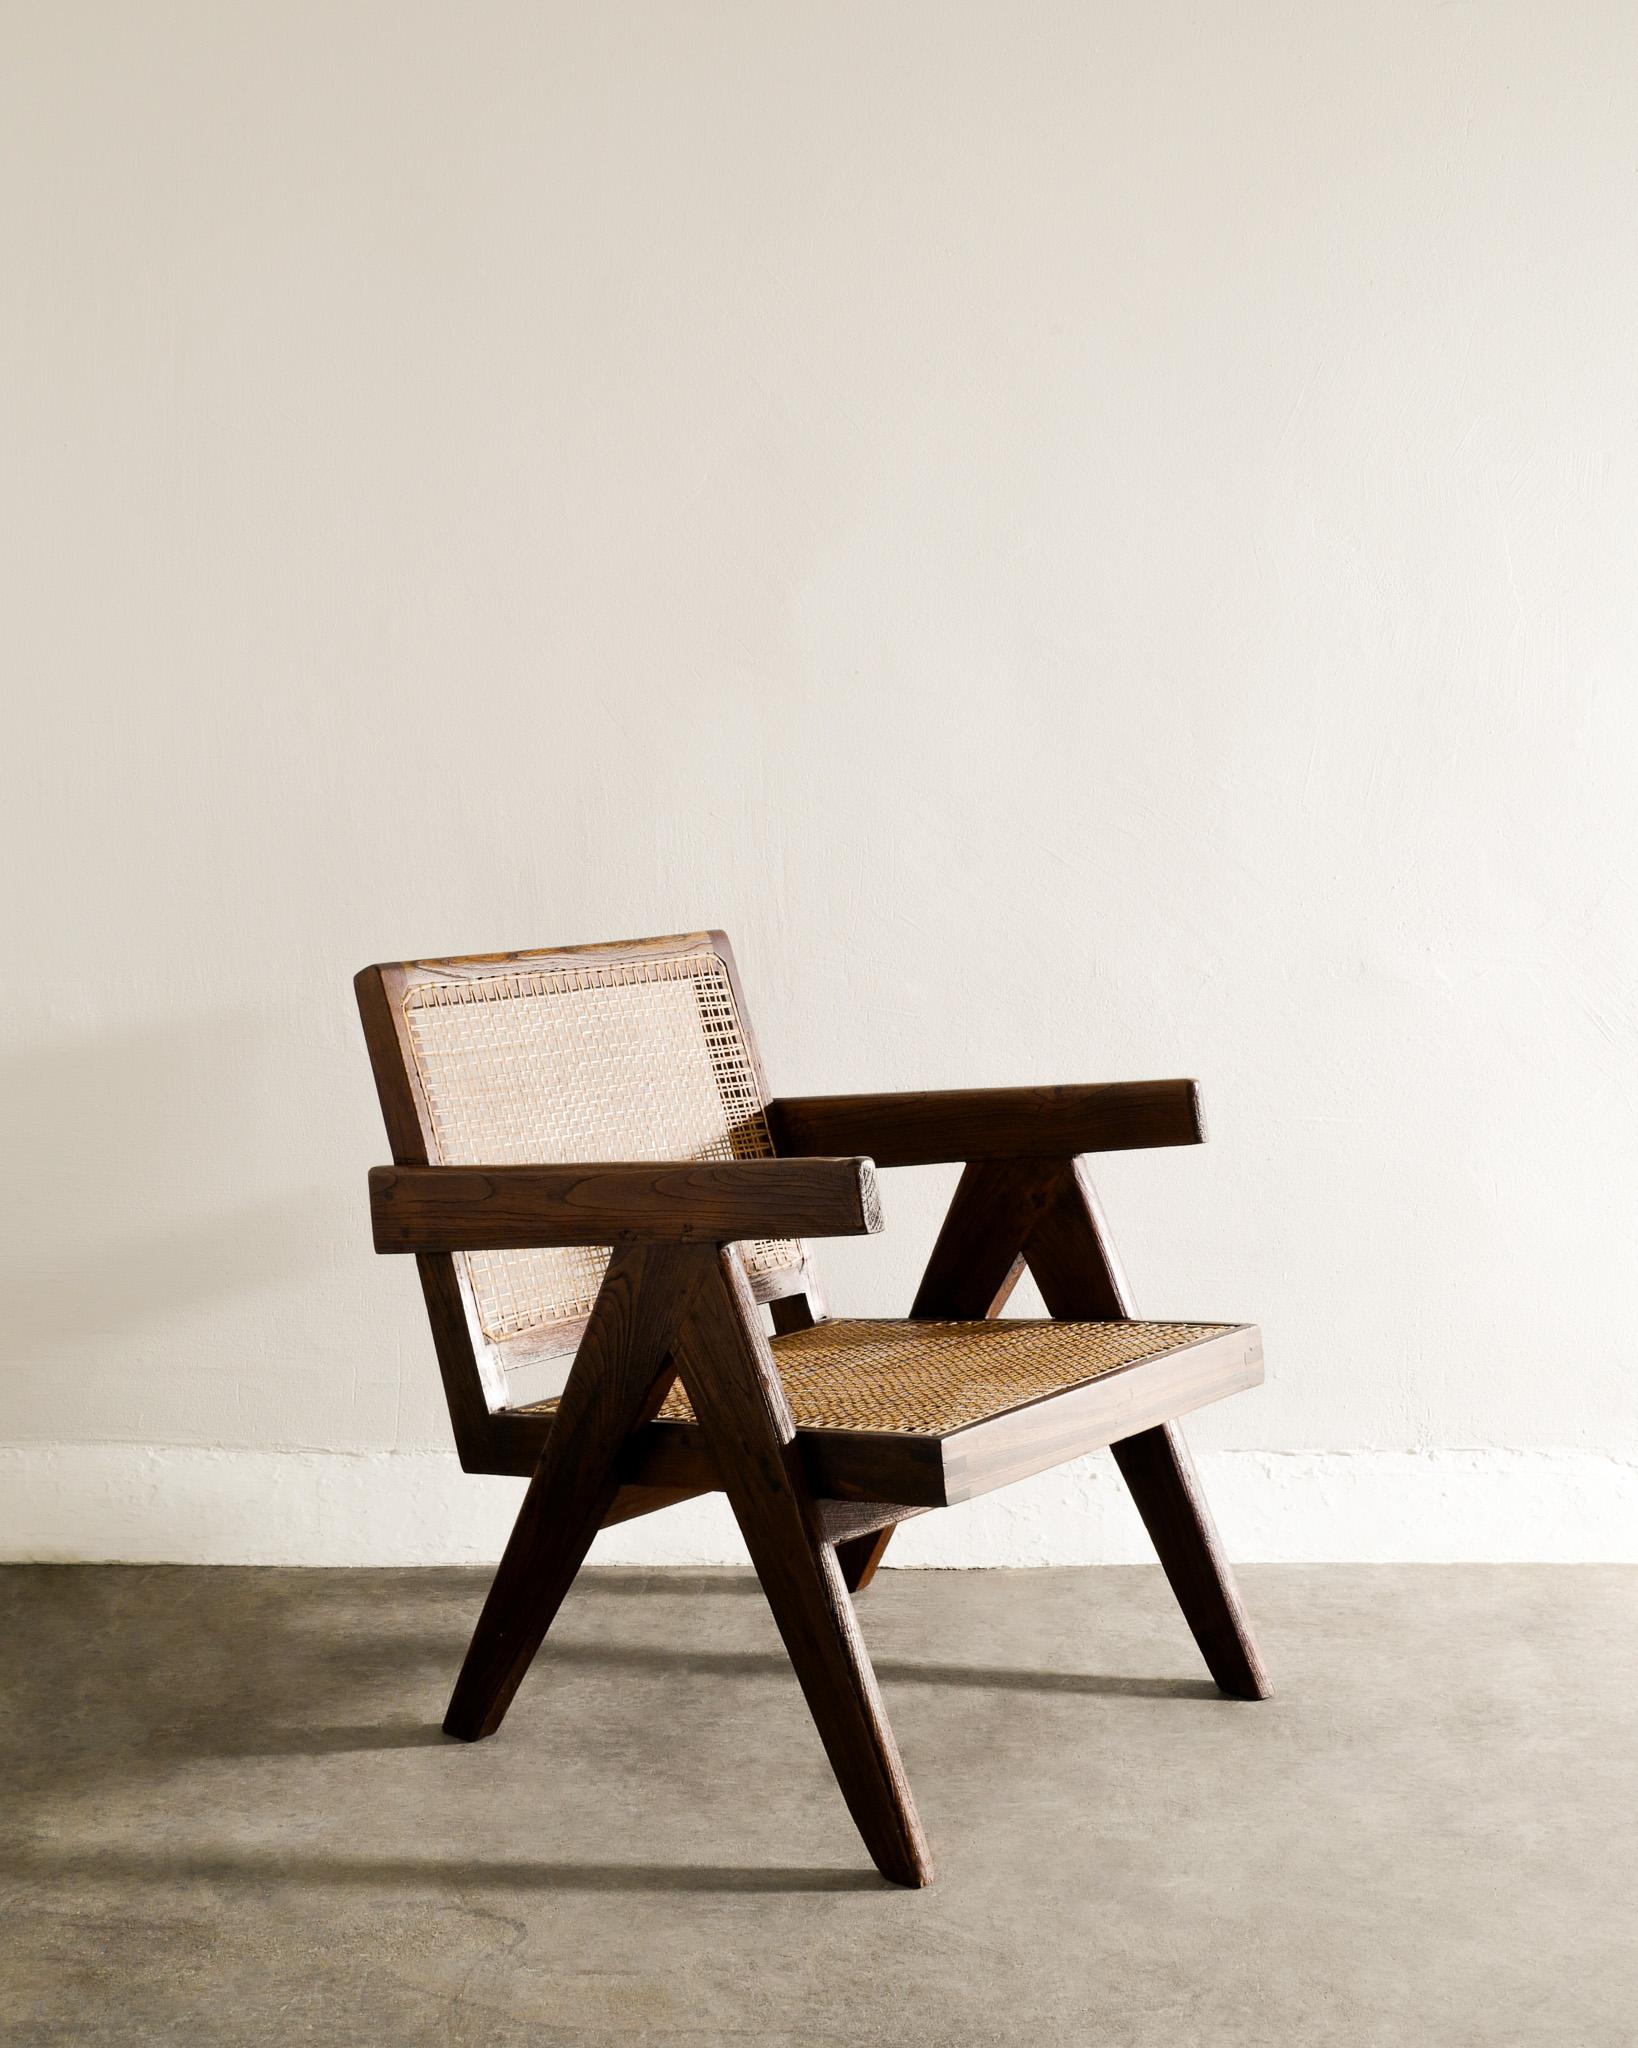 Seltener Sessel aus der Mitte des Jahrhunderts aus Teakholz und Rattan von Pierre Jeanneret, hergestellt für Chandigarh, Indien in den 1950er Jahren. In gutem Vintage-Zustand. Das Kissen ist nicht im Lieferumfang enthalten, kann aber auf Wunsch